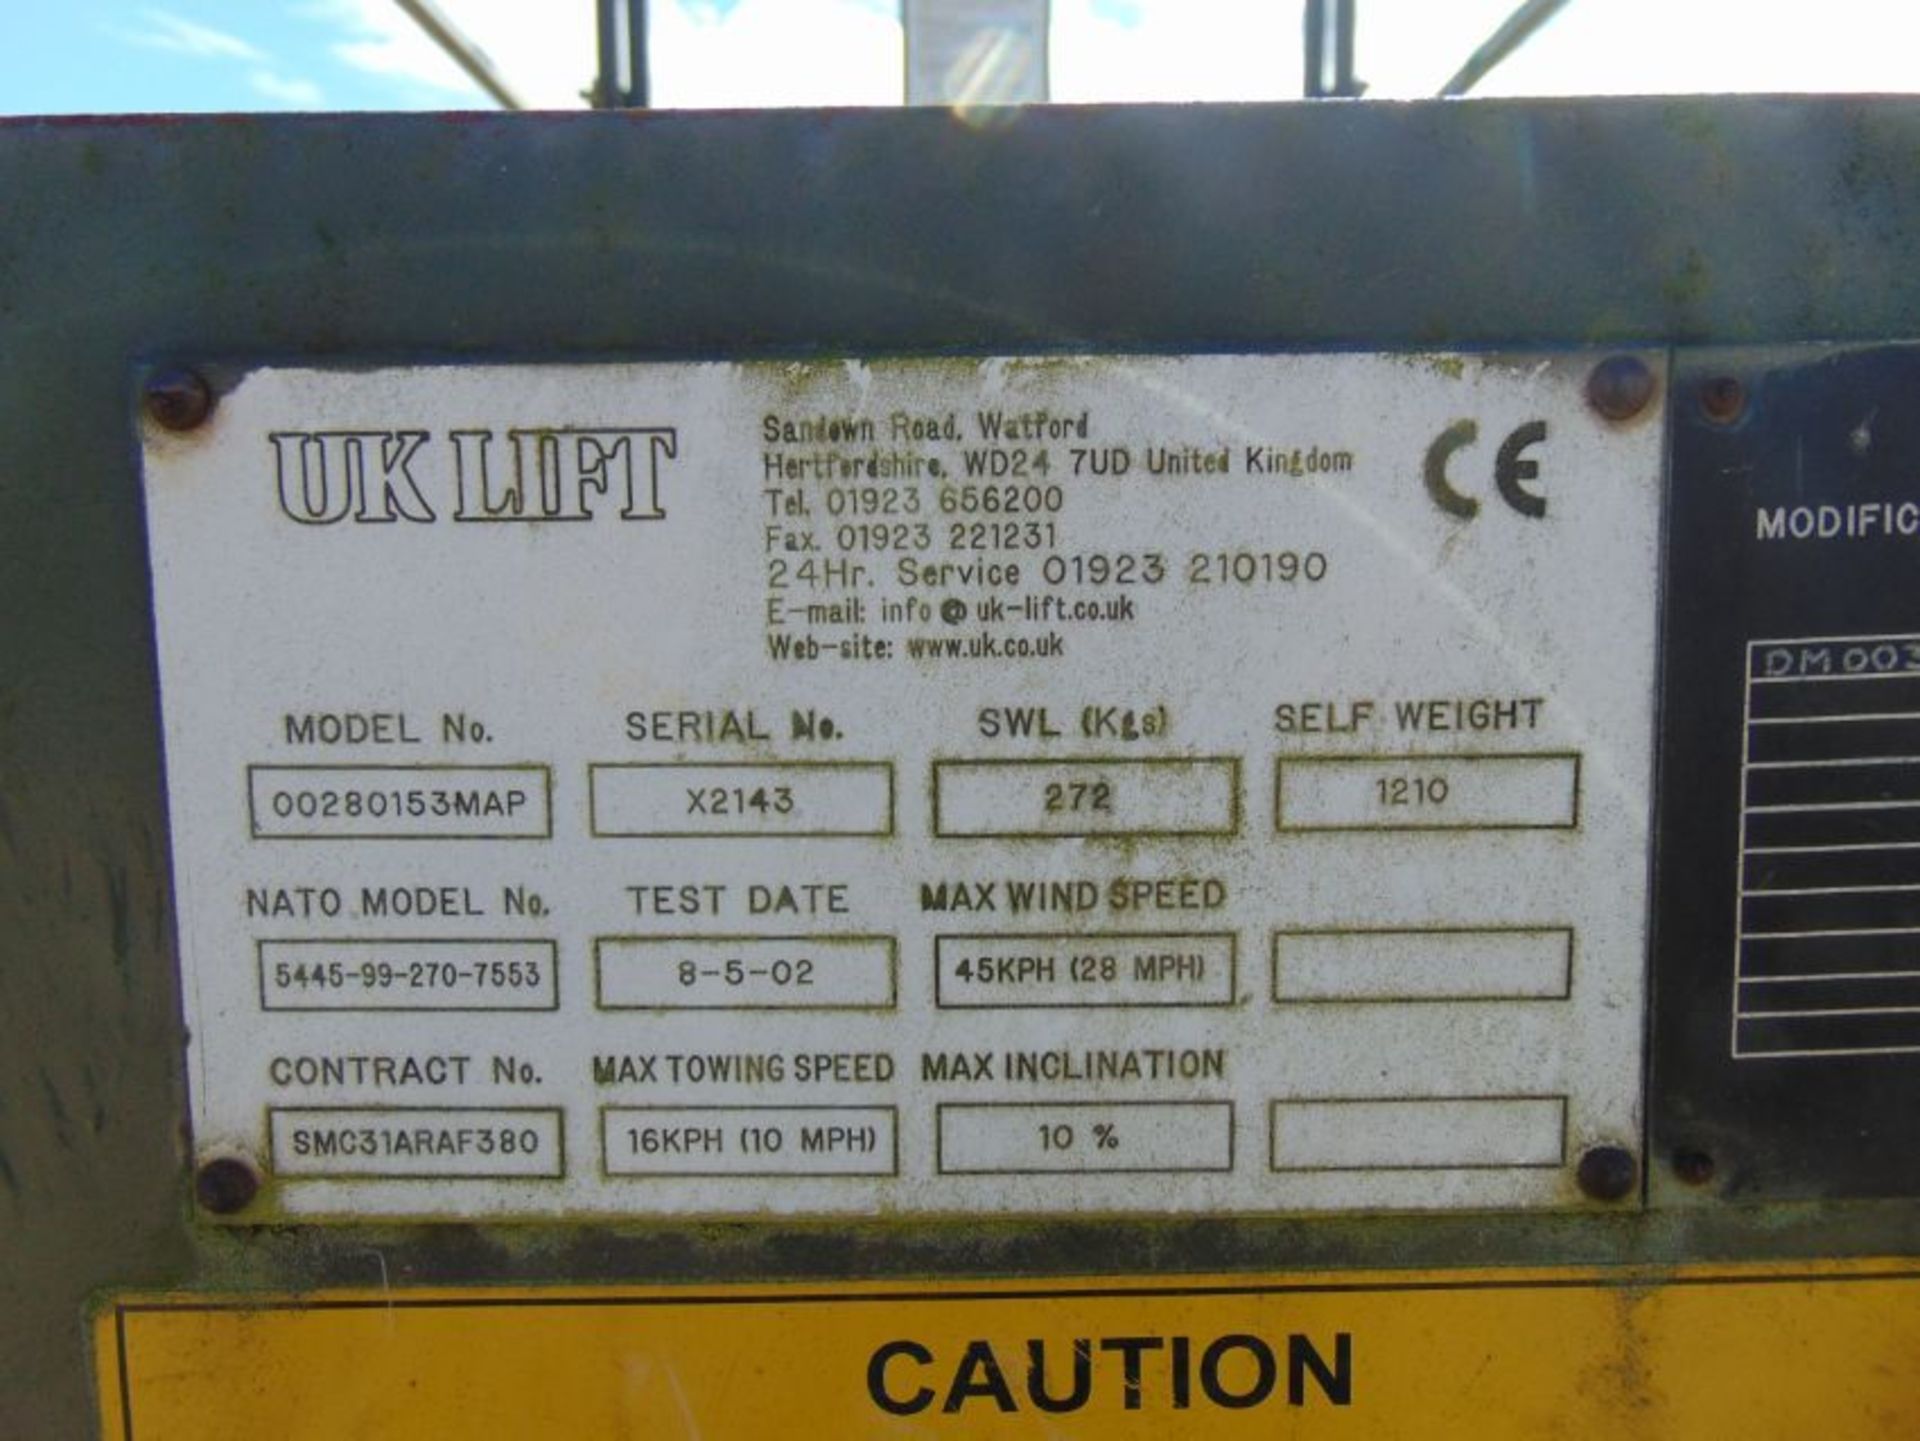 RAF Maintenance Unit UK Lift Hydraulic Access Platform SWL 272 Kgs - Image 11 of 11